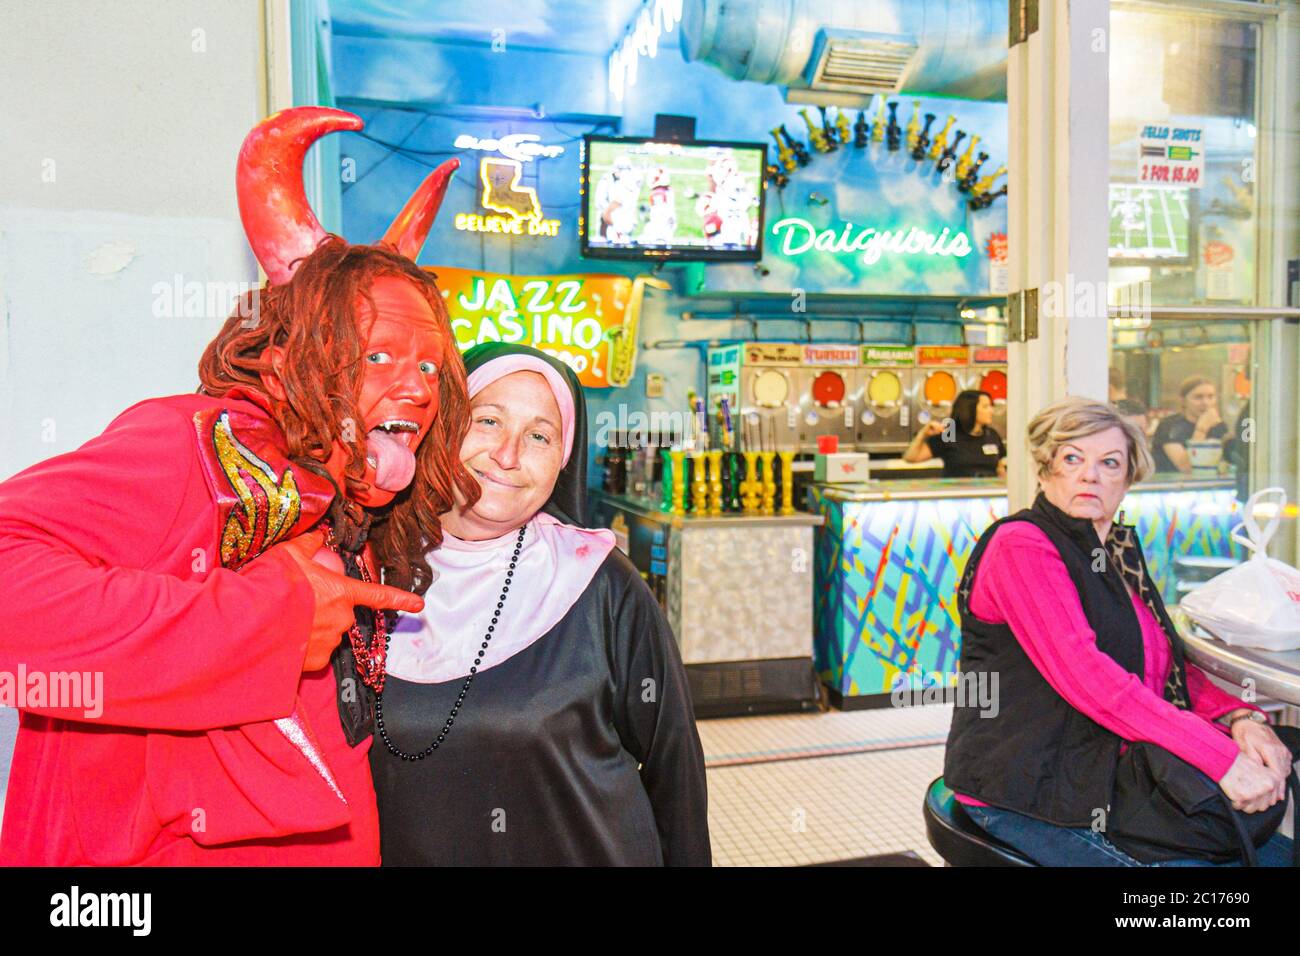 New Orleans Louisiana,French Quarter,daiquiris,bar lounge pub,Red Devil,cornes,nun,religion,drôle,humour,humour,humour,humour,humour,humour,costume,mascarade,rév Banque D'Images